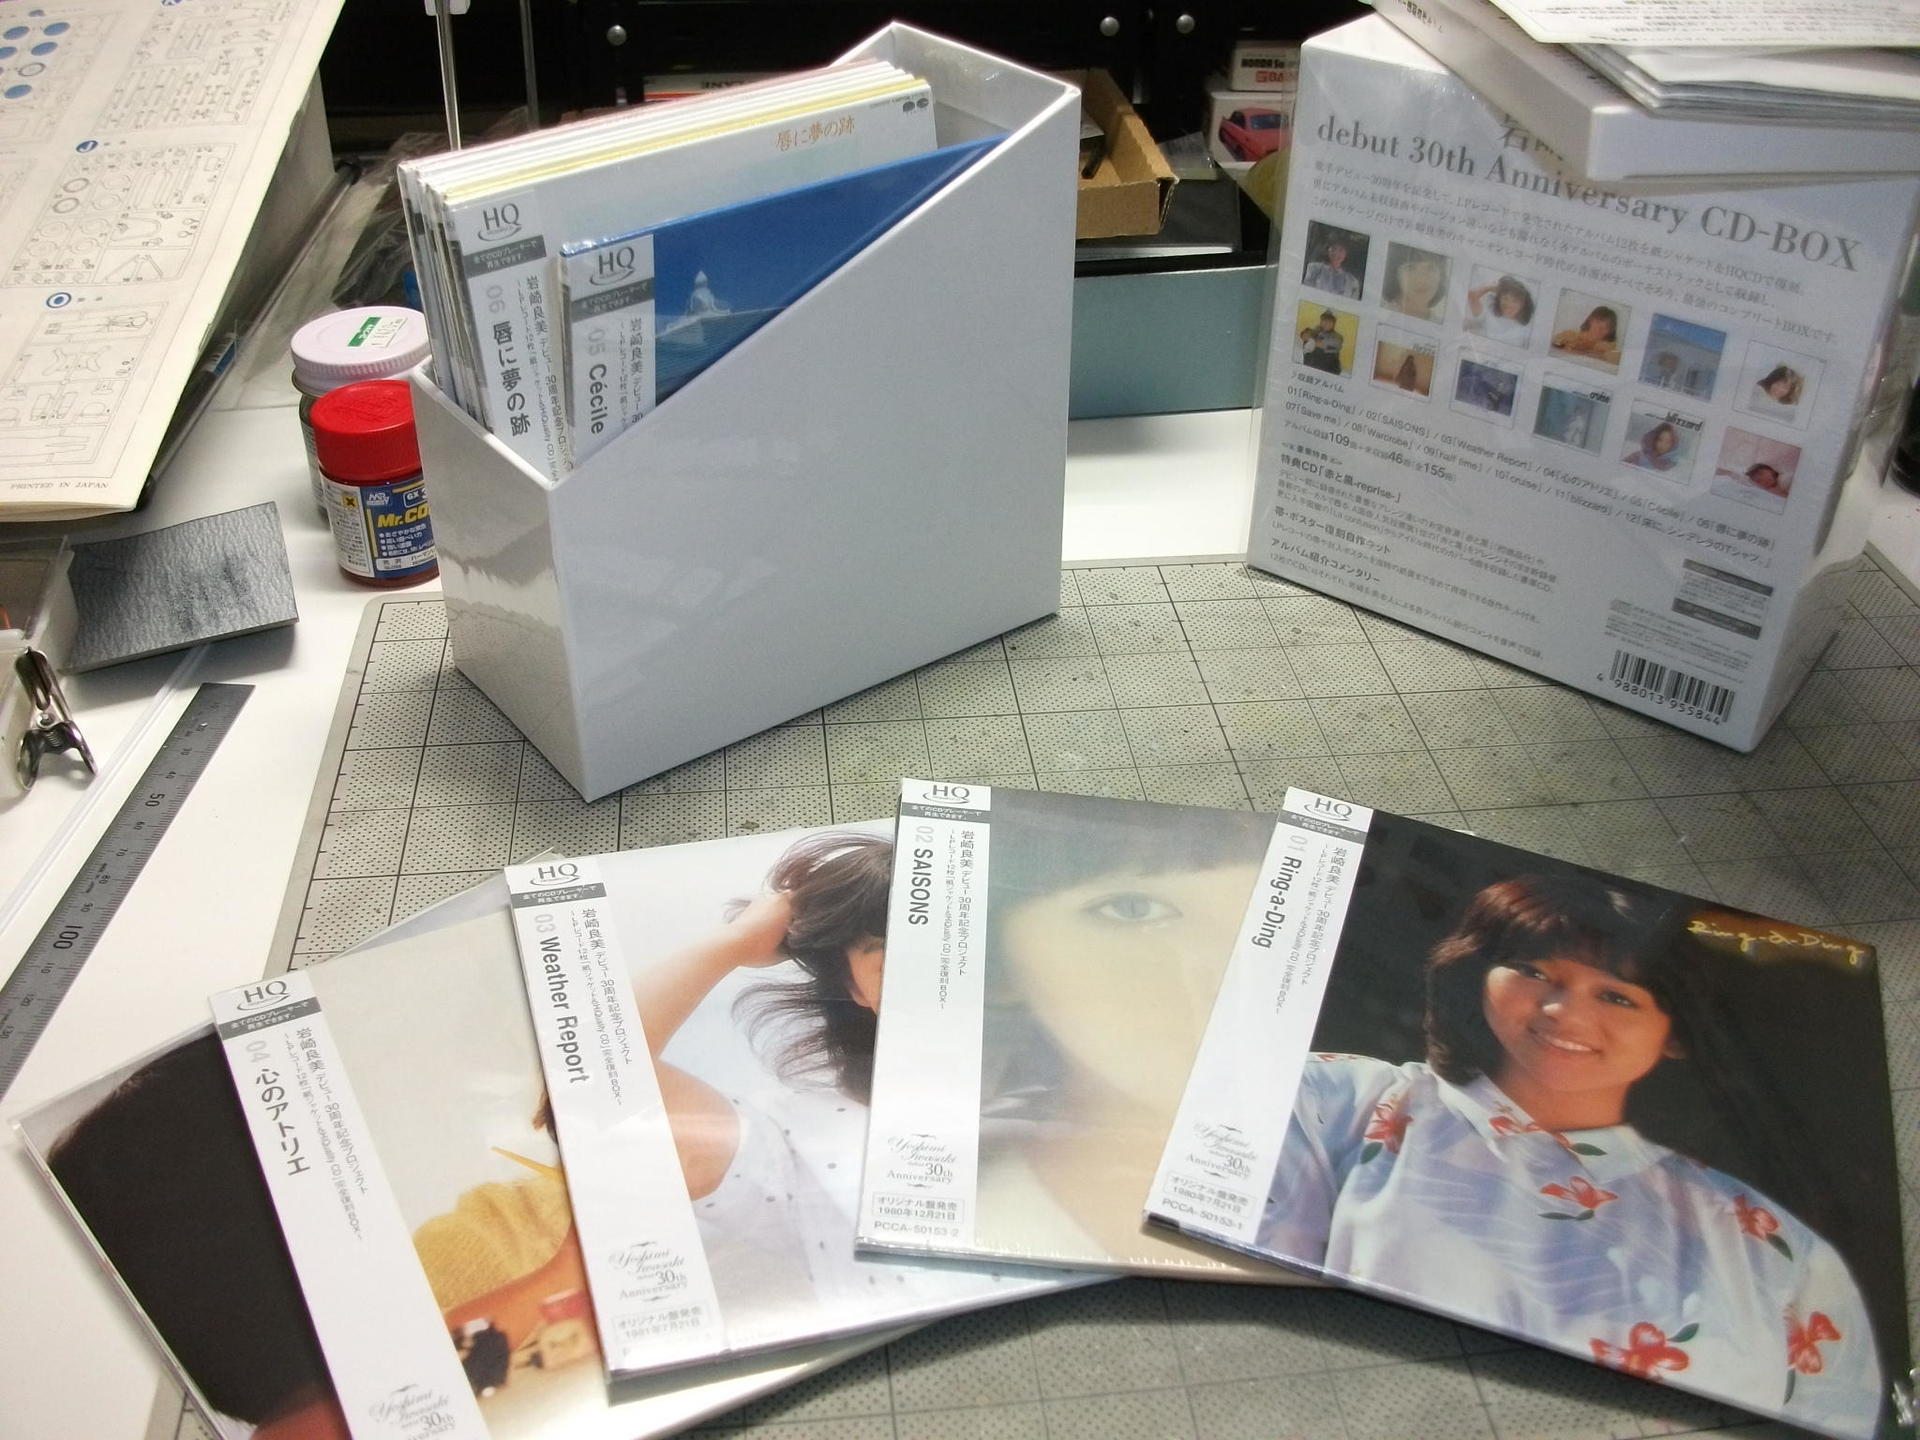 岩崎良美debut 30th Anniversary CD-BOX: ヒロシのホビーライフ雑記帳